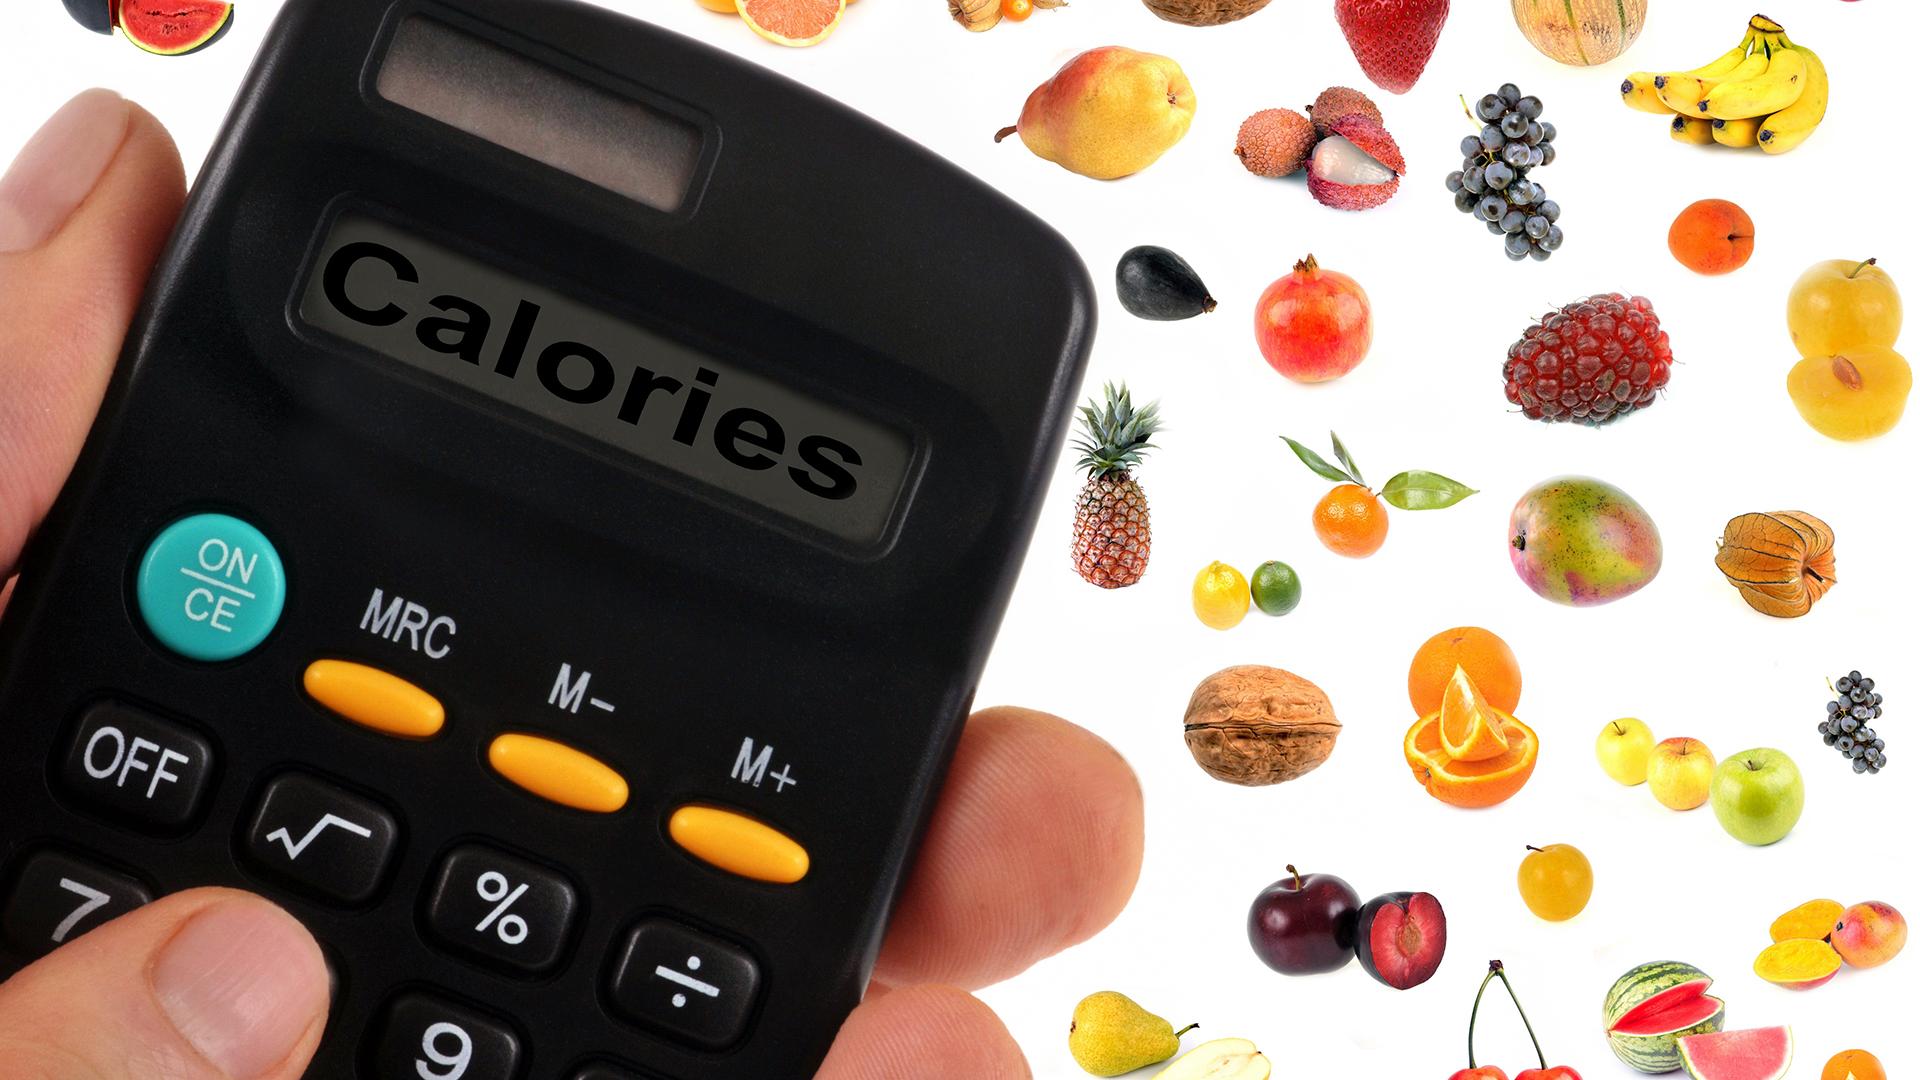 mfp calorie calculator